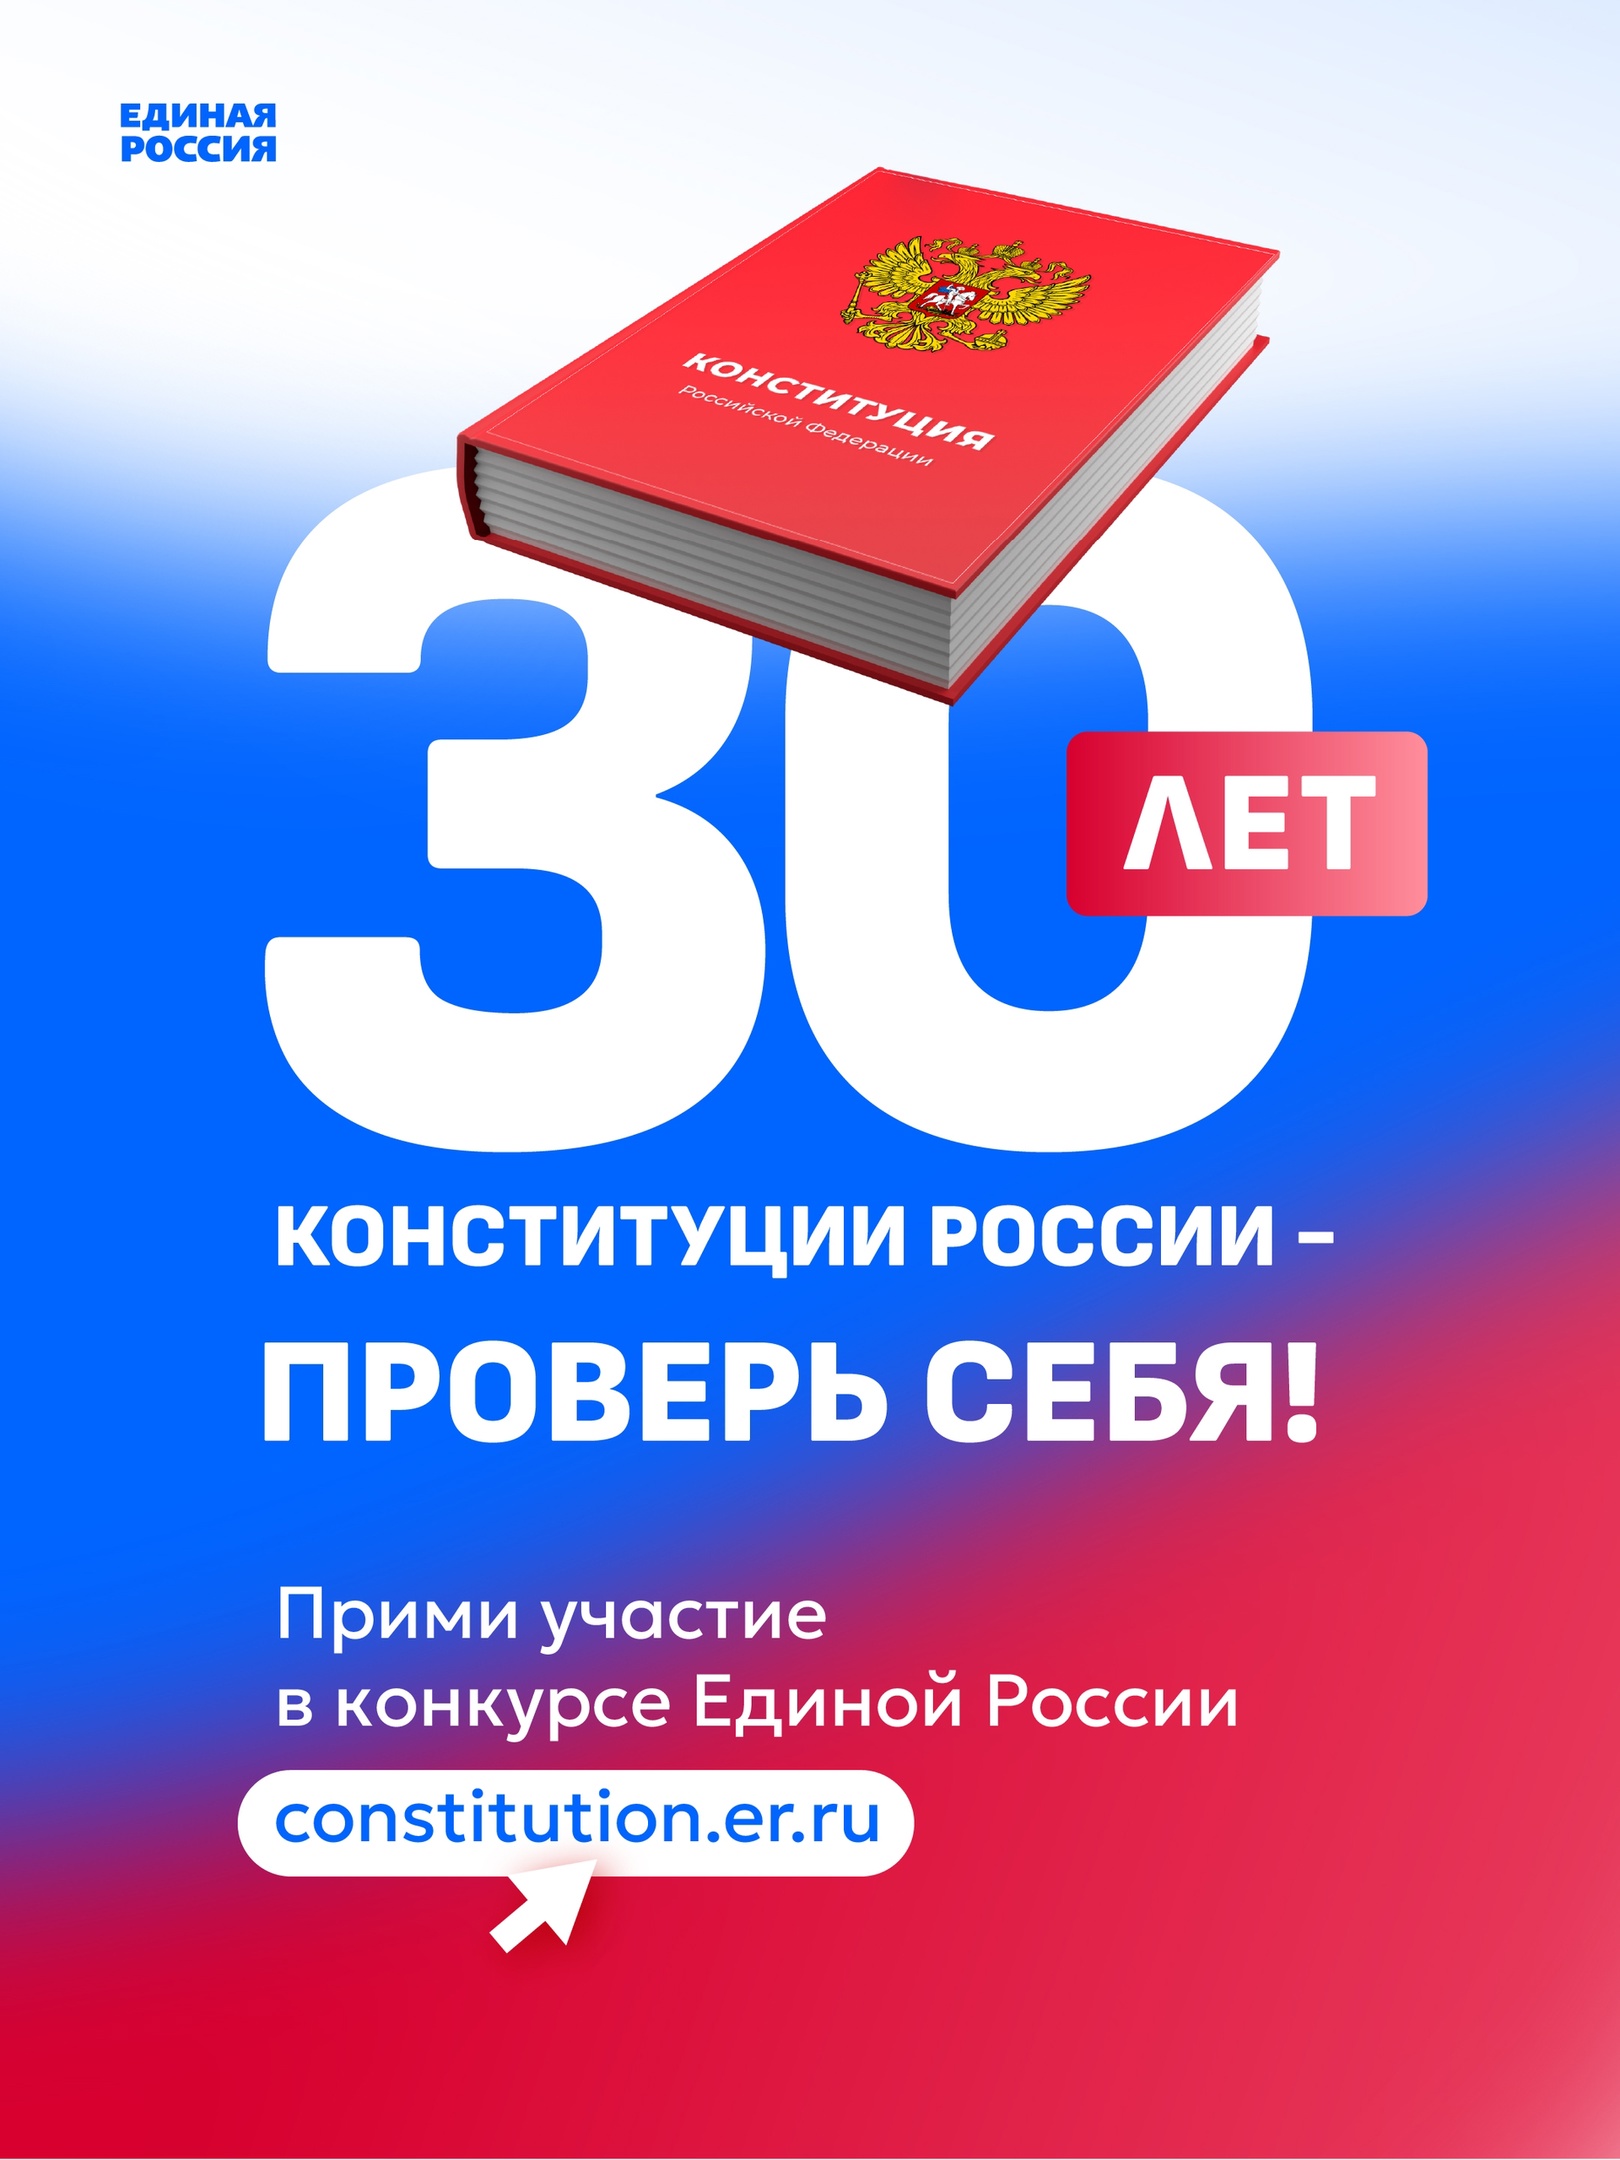 Ульяновцы могут пройти тест на знание Конституции РФ.